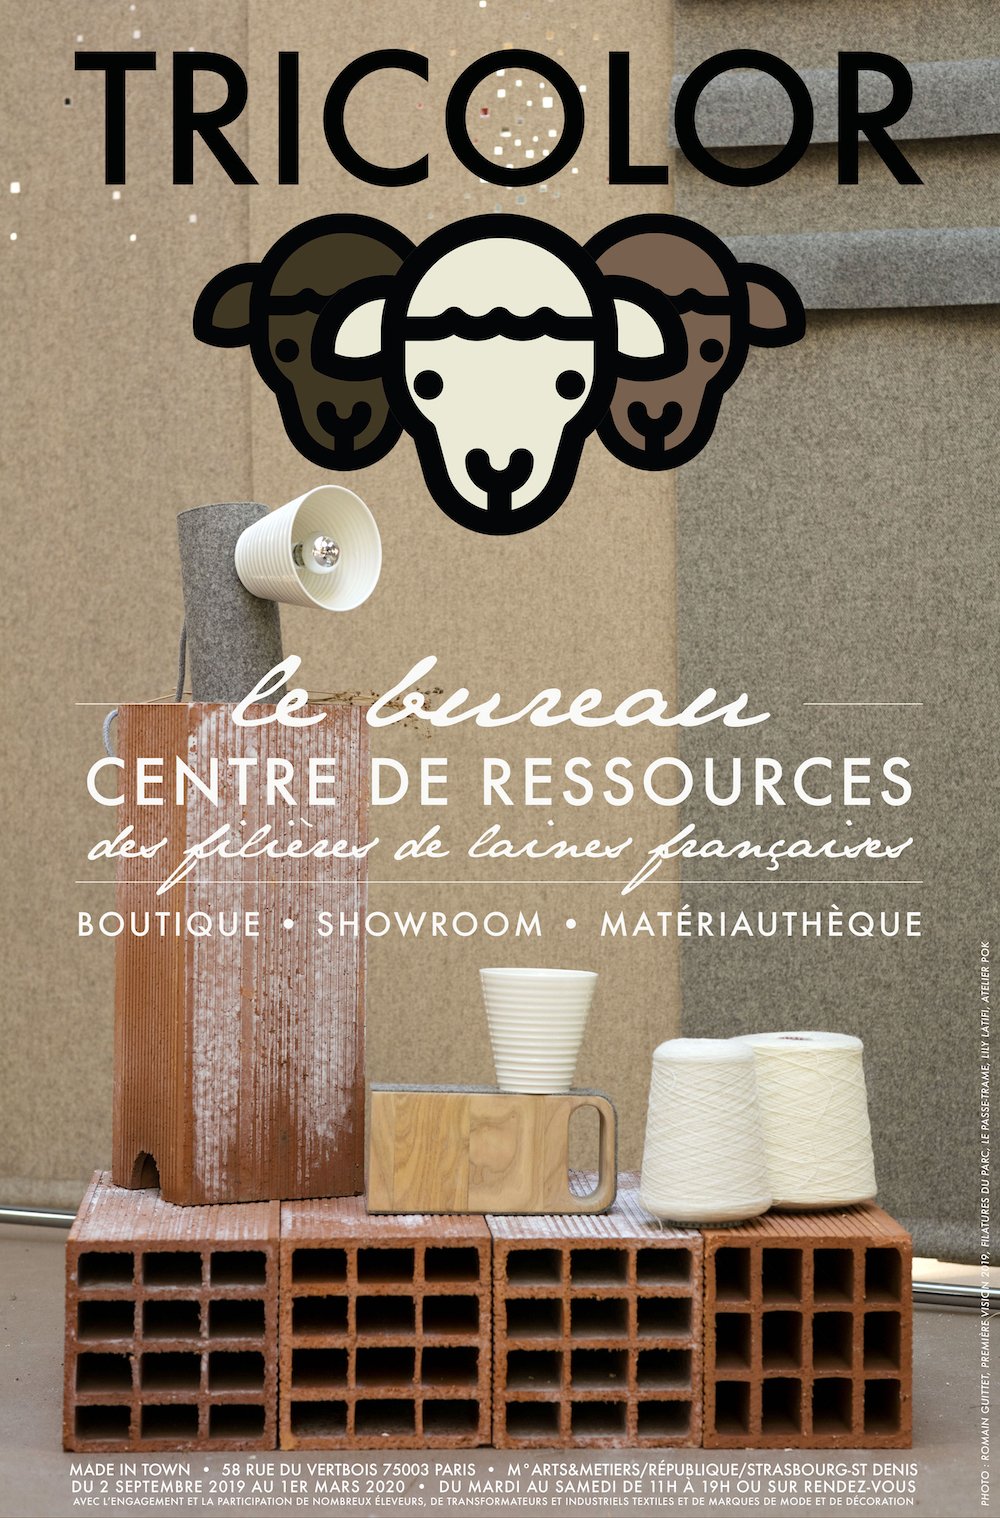 Le Bureau TRICOLOR<br /> Centre de ressources des filières de laines françaises